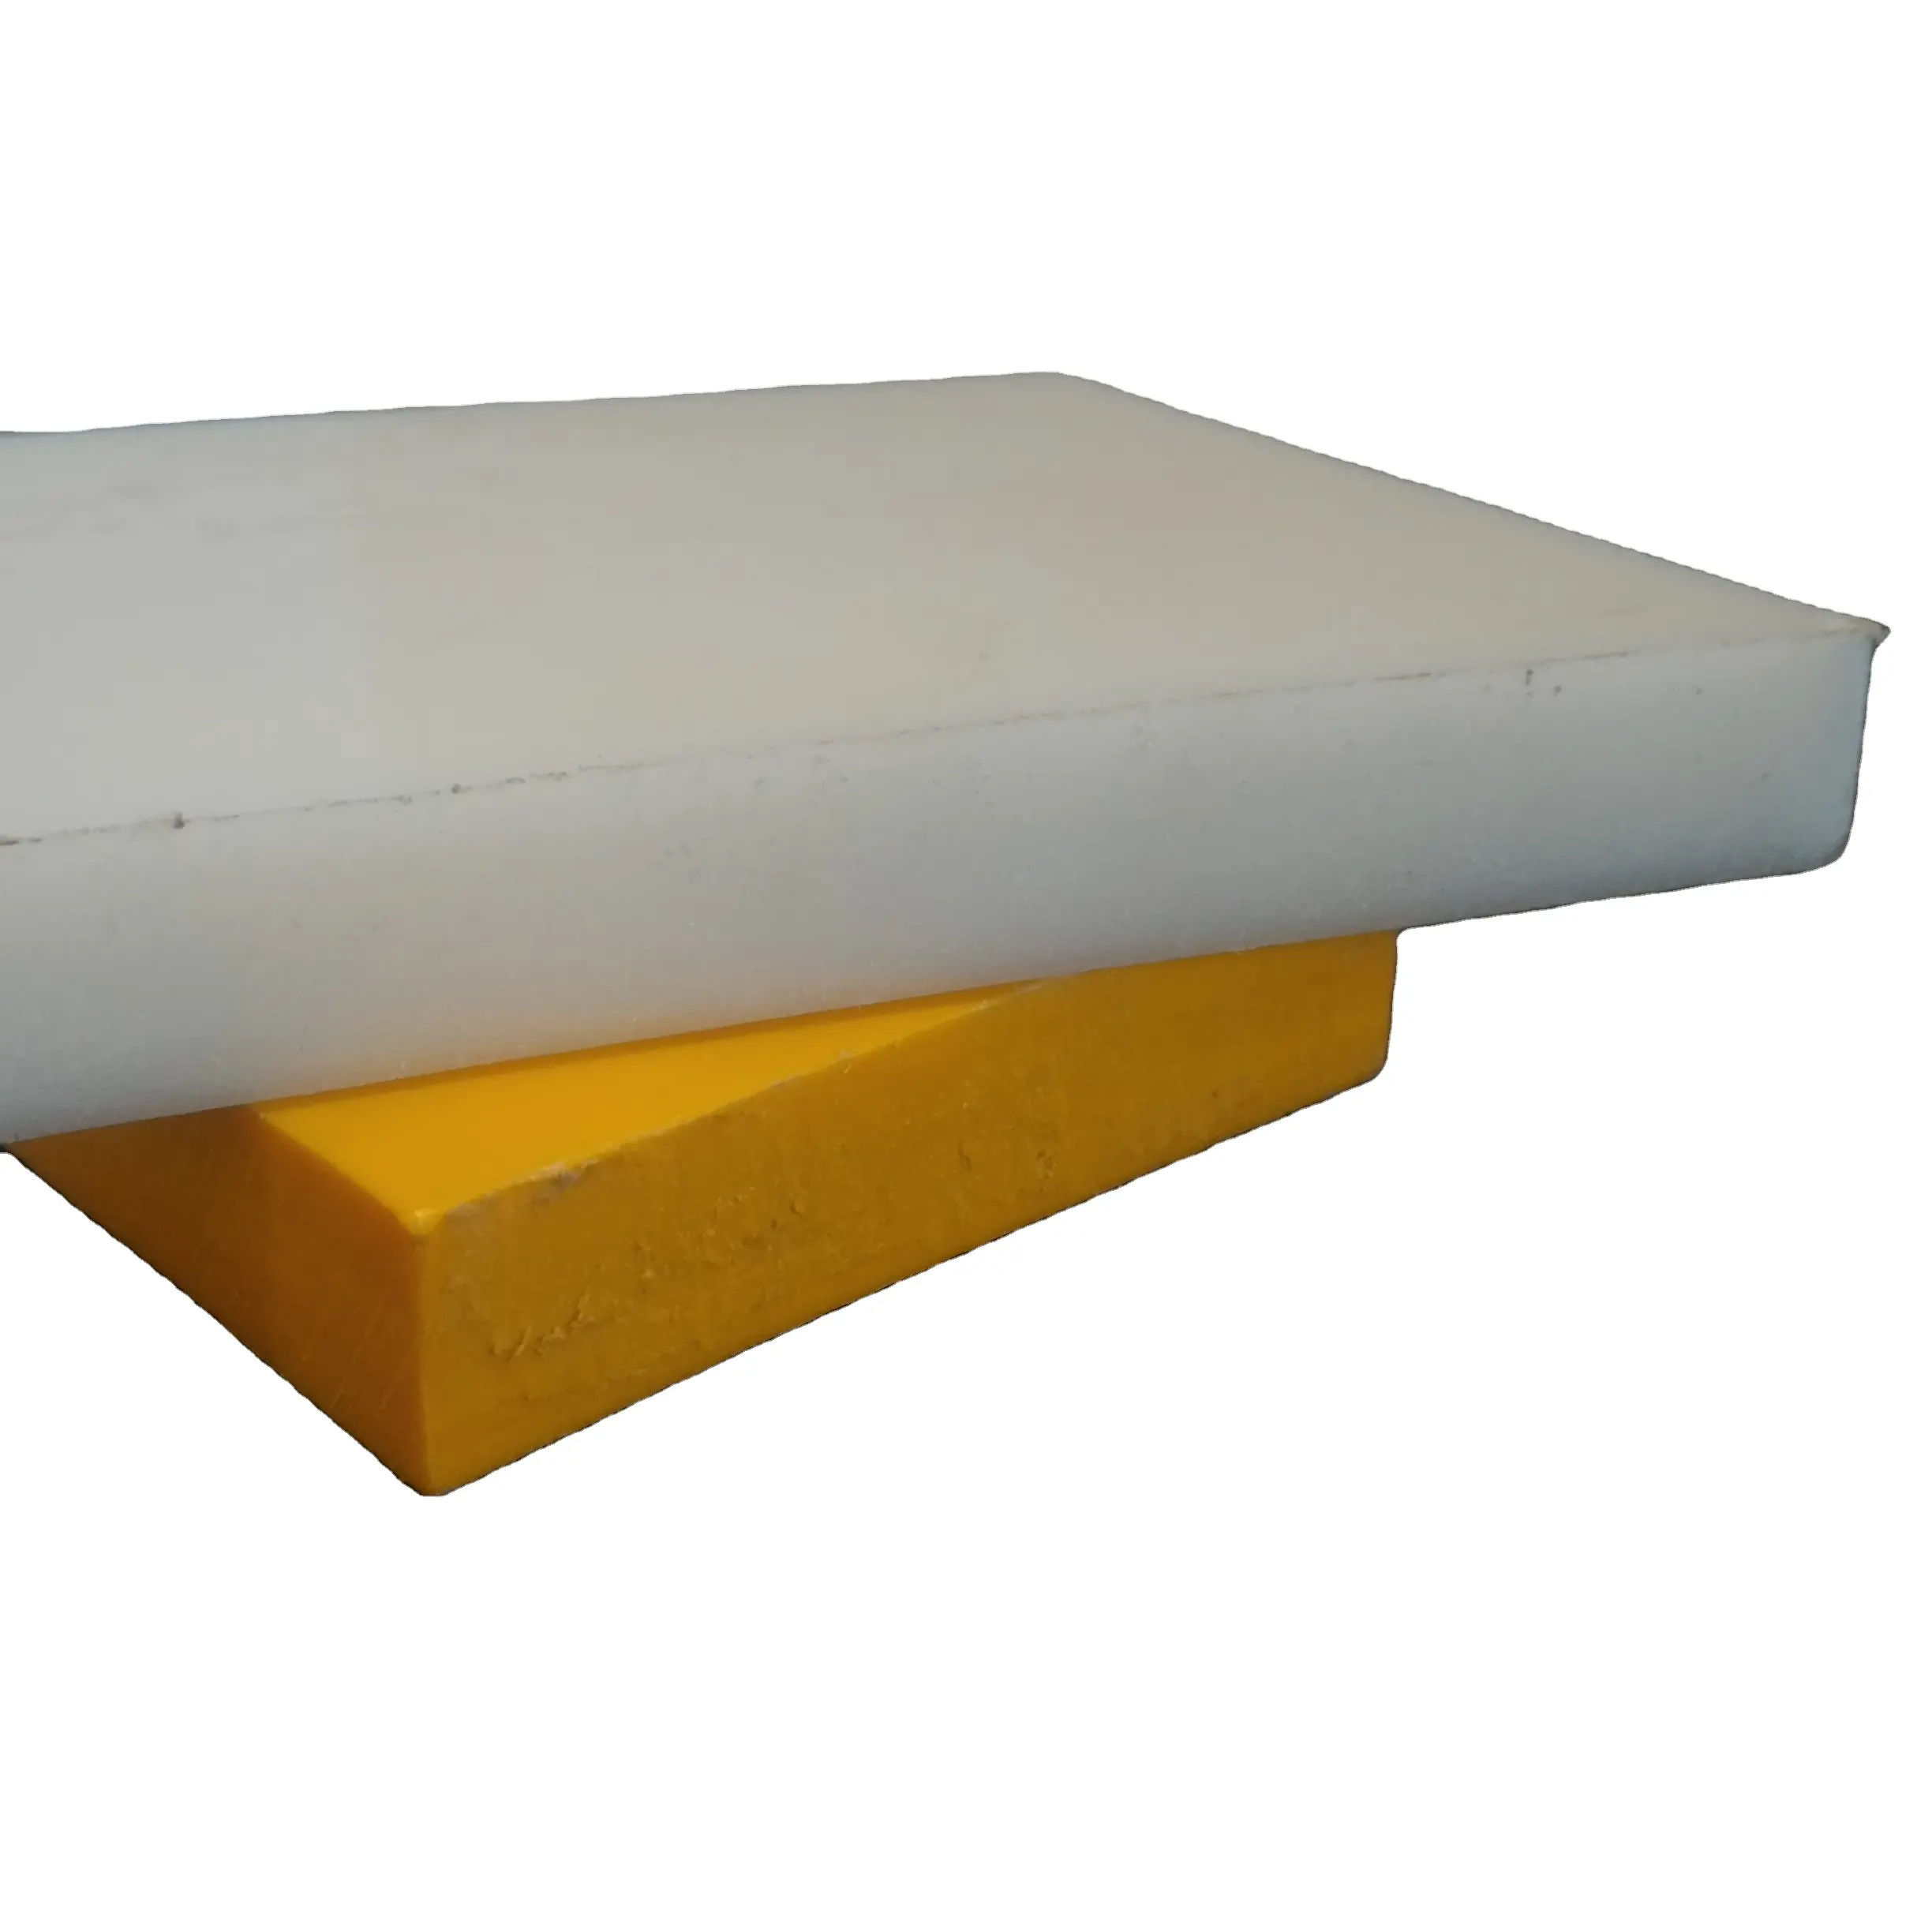 Hoja de plástico de grado virgen UP UHMWPE hoja sólida color blanco 2 a 100 mm de espesor polímero fuerte ISO 9001:2015 empresa certificada